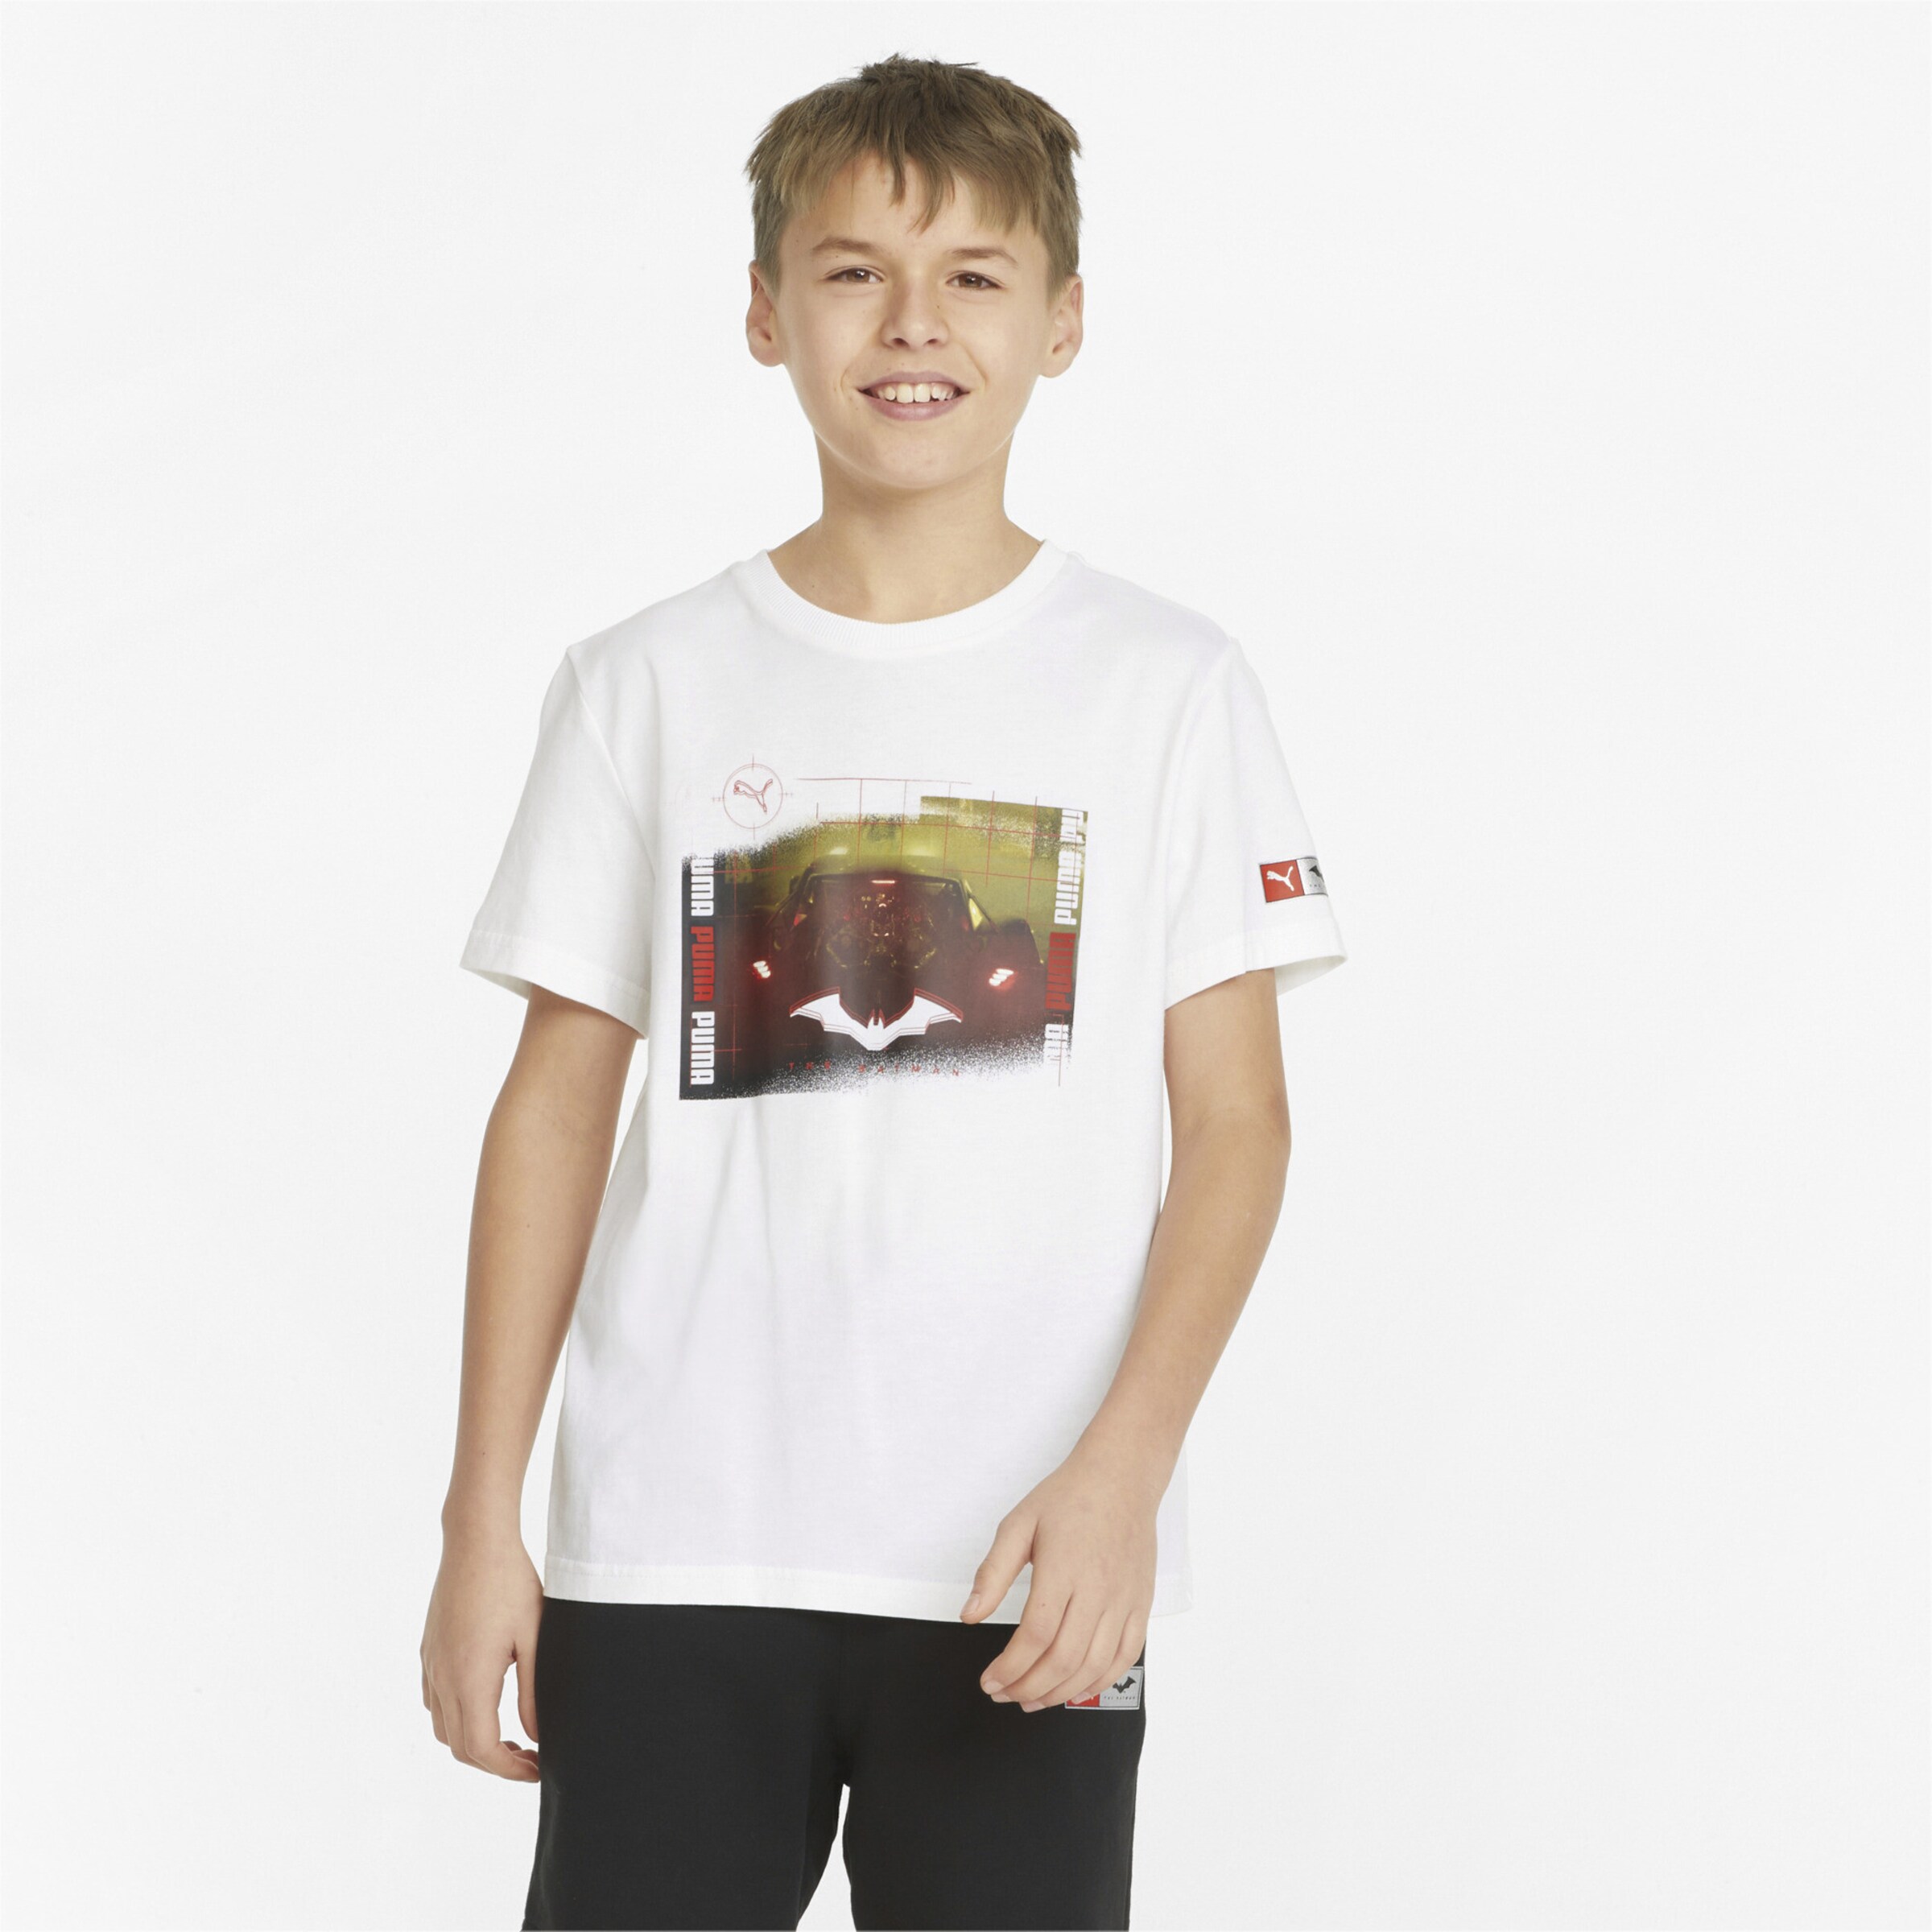 PUMA Jungen T-Shirt Gr DE 164 Jungen Bekleidung Shirts T-Shirts 